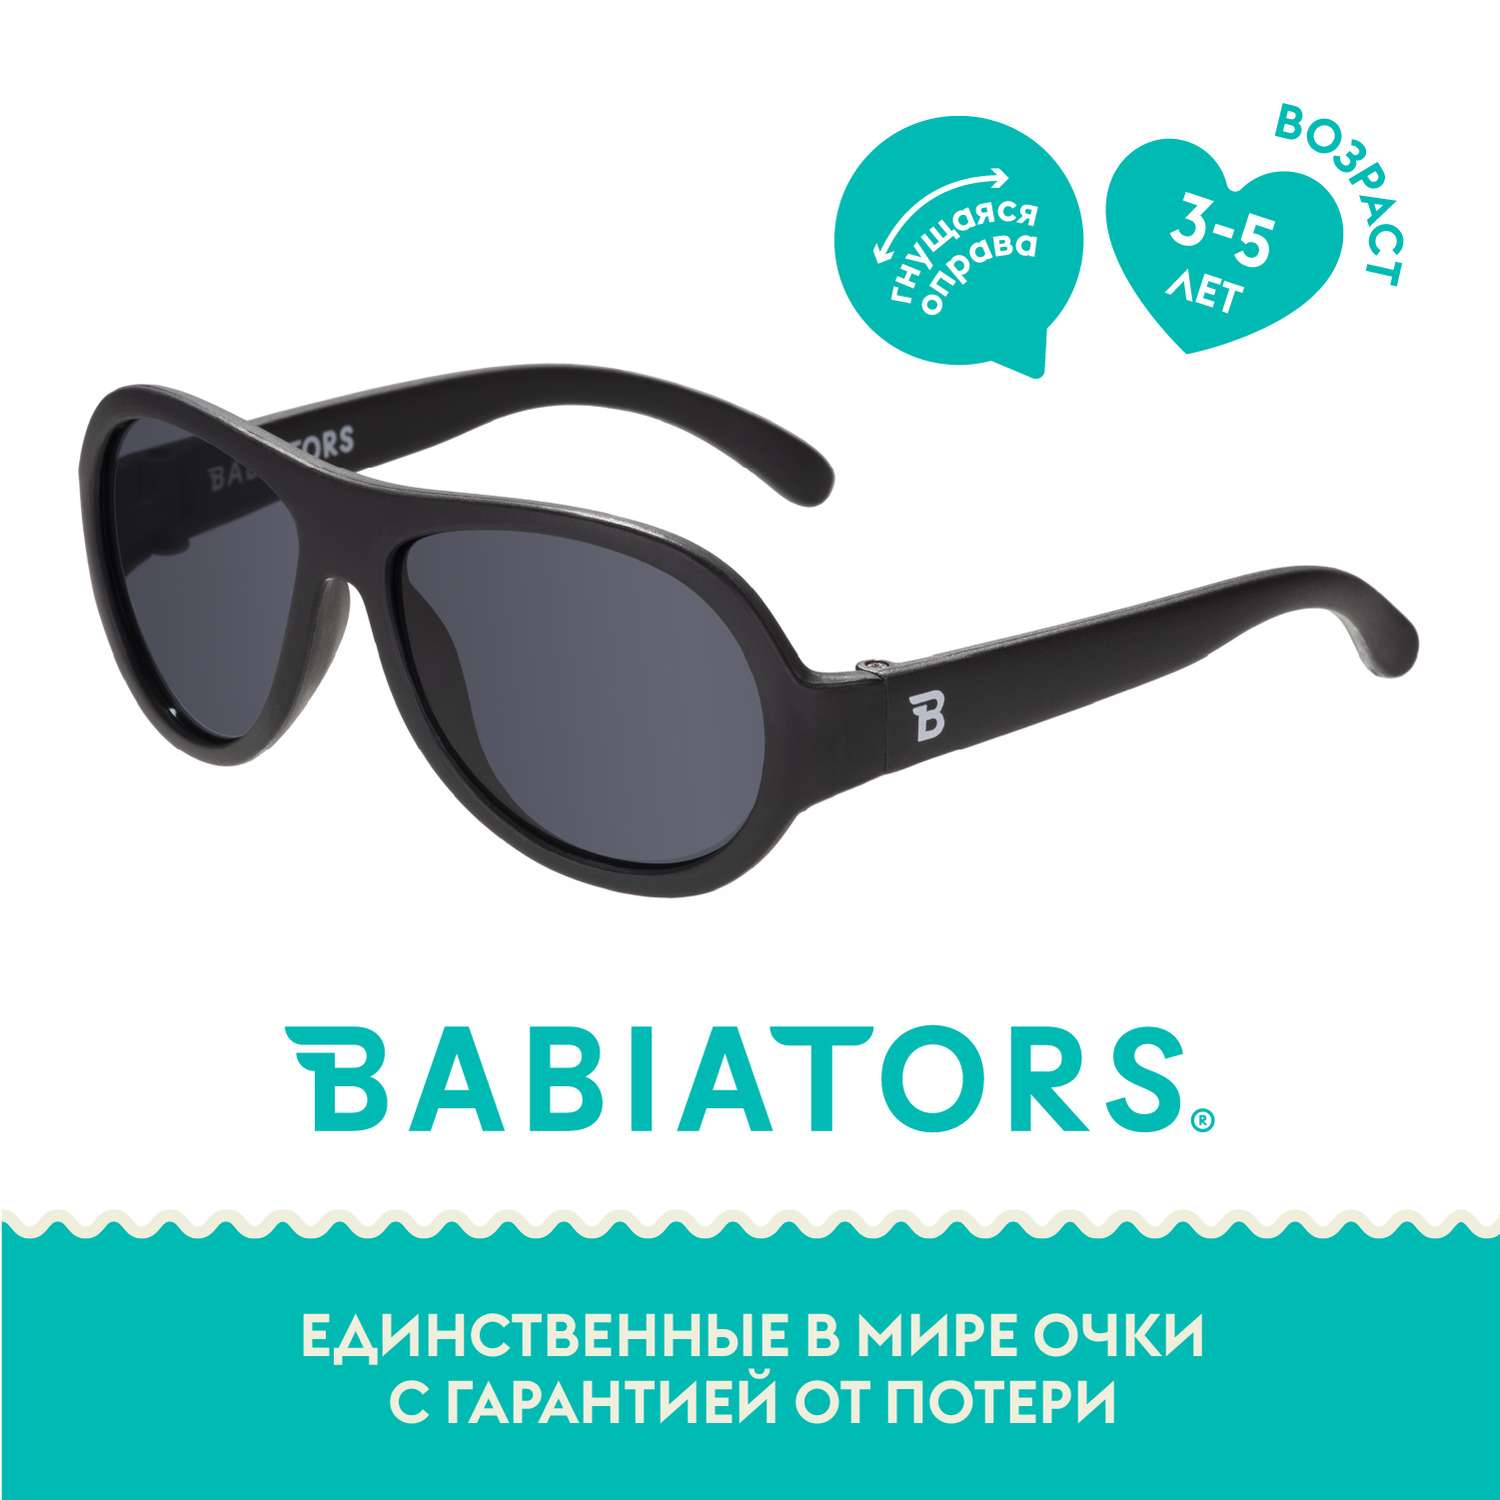 Солнцезащитные очки Babiators Aviator Чёрный спецназ 3-5 BAB-005 - фото 1